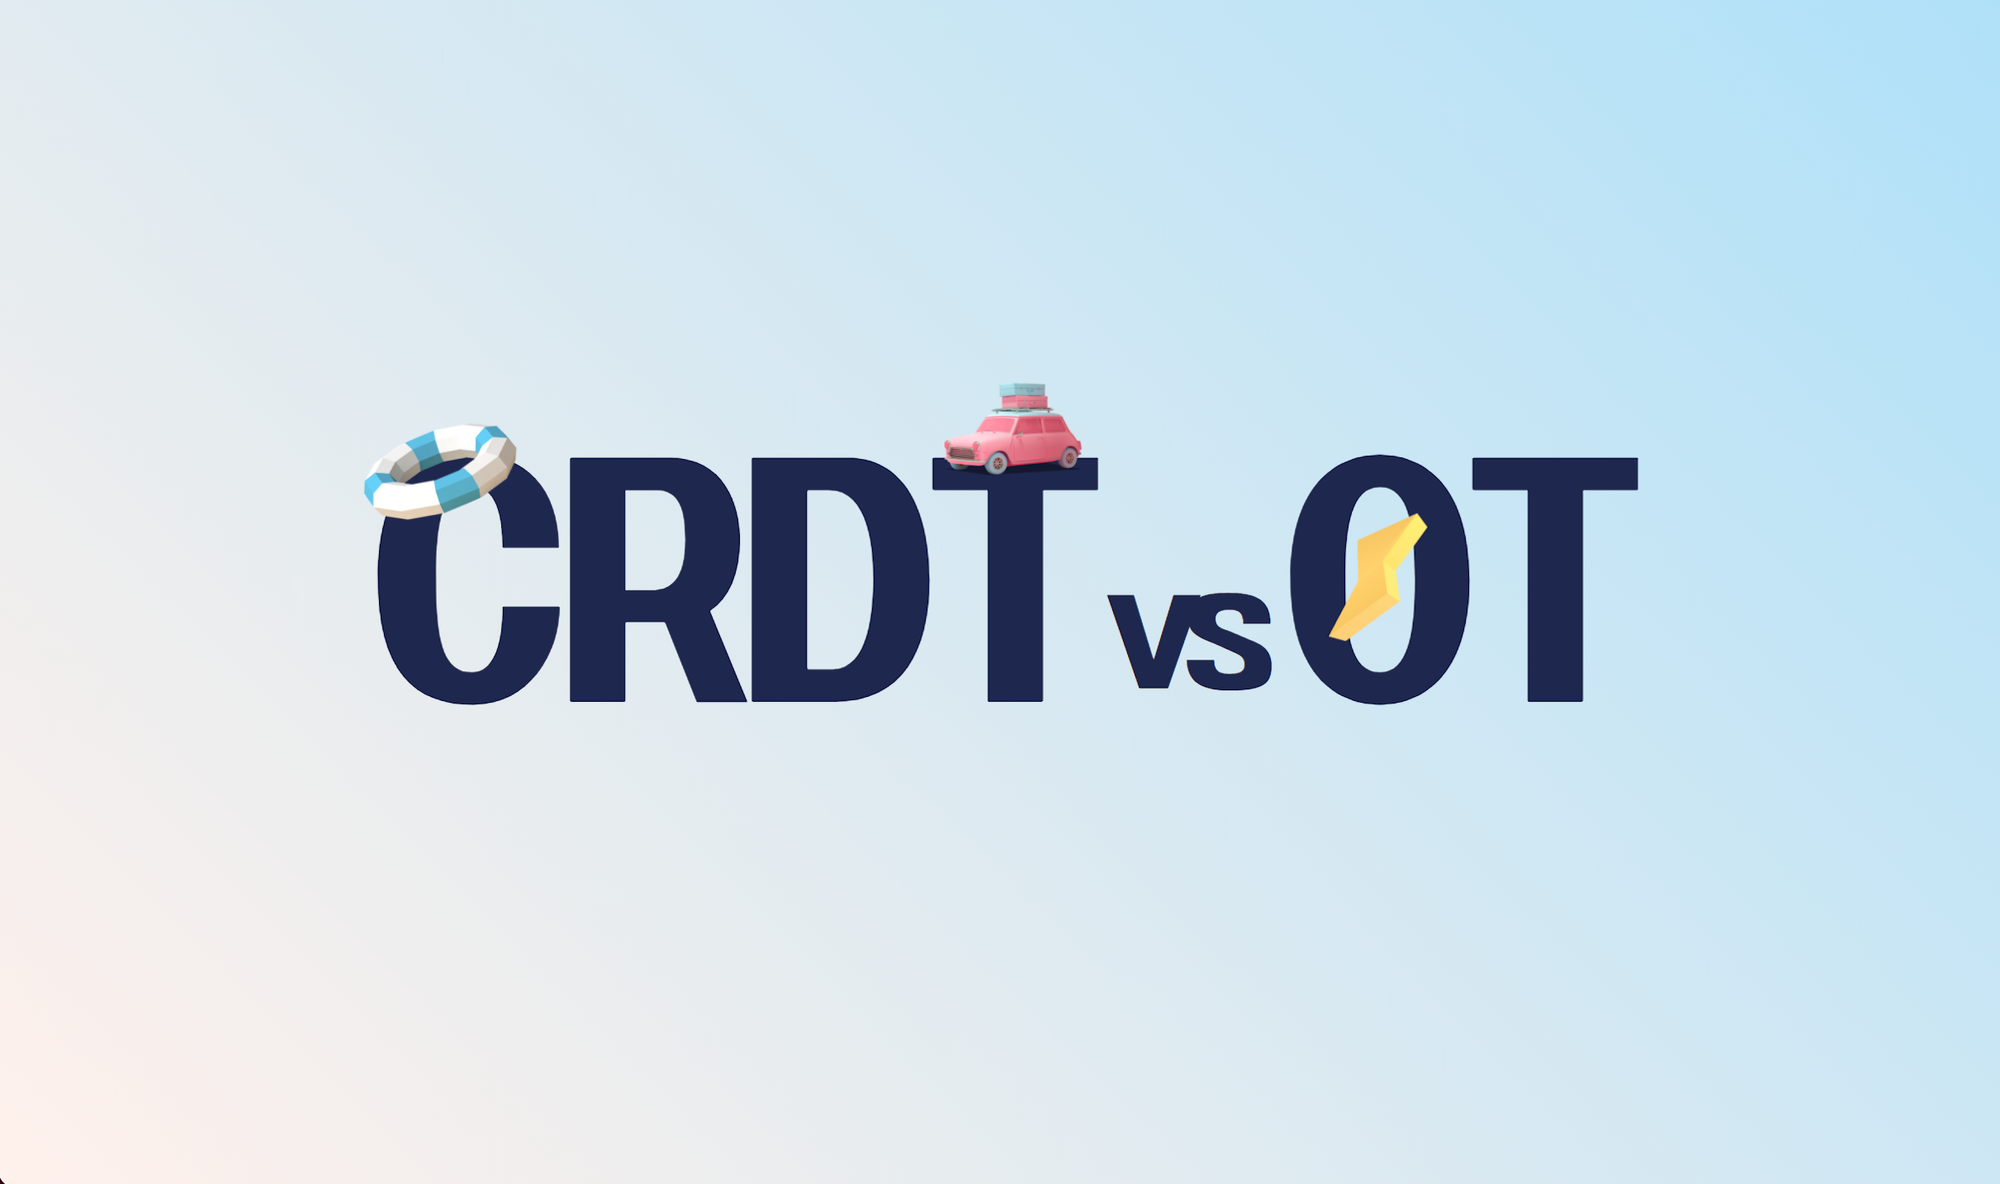 CRDT vs OT